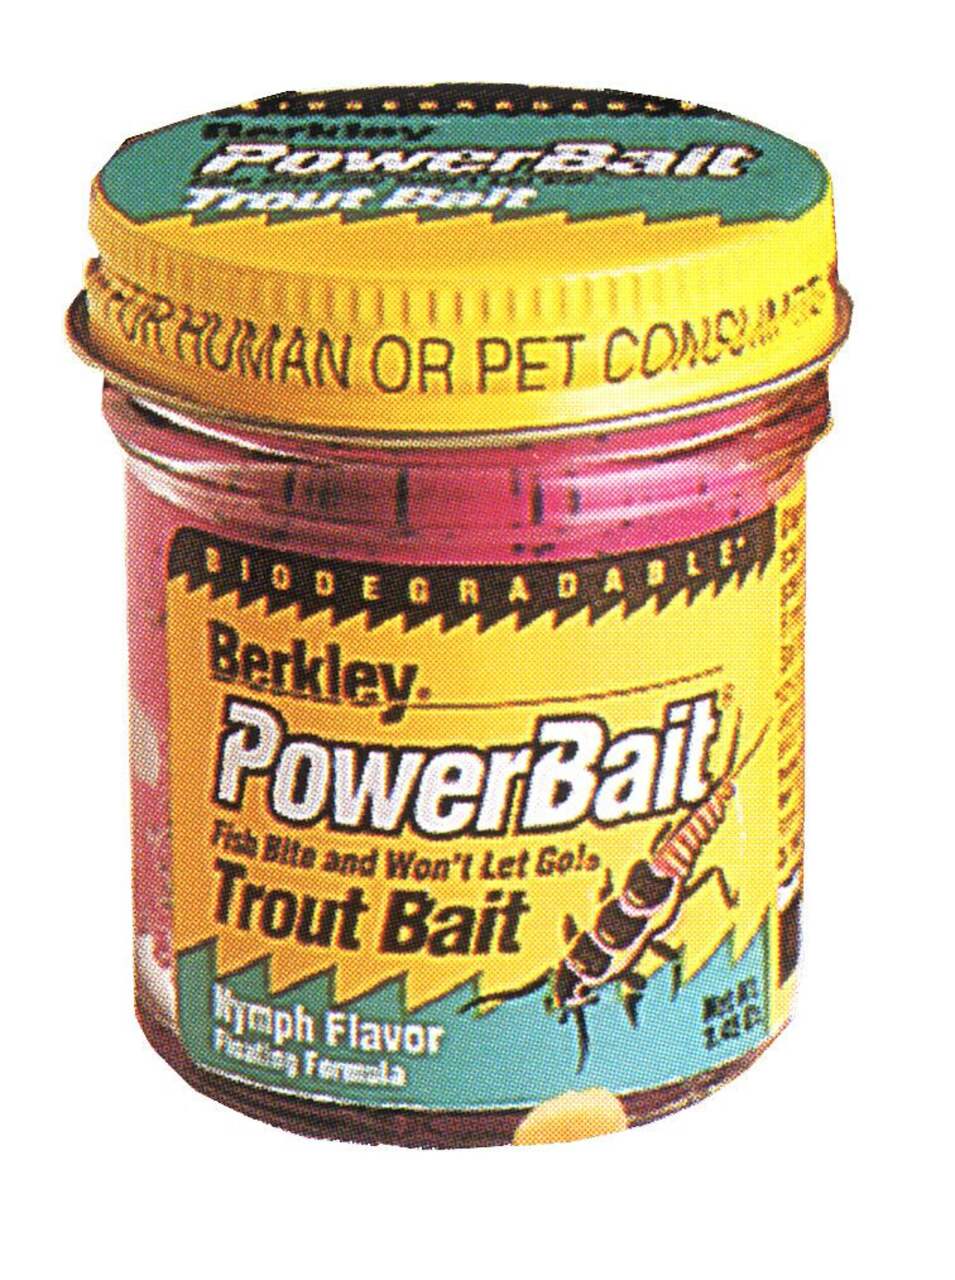 Berkley PowerBait Trout Bait Fluorescent Orange